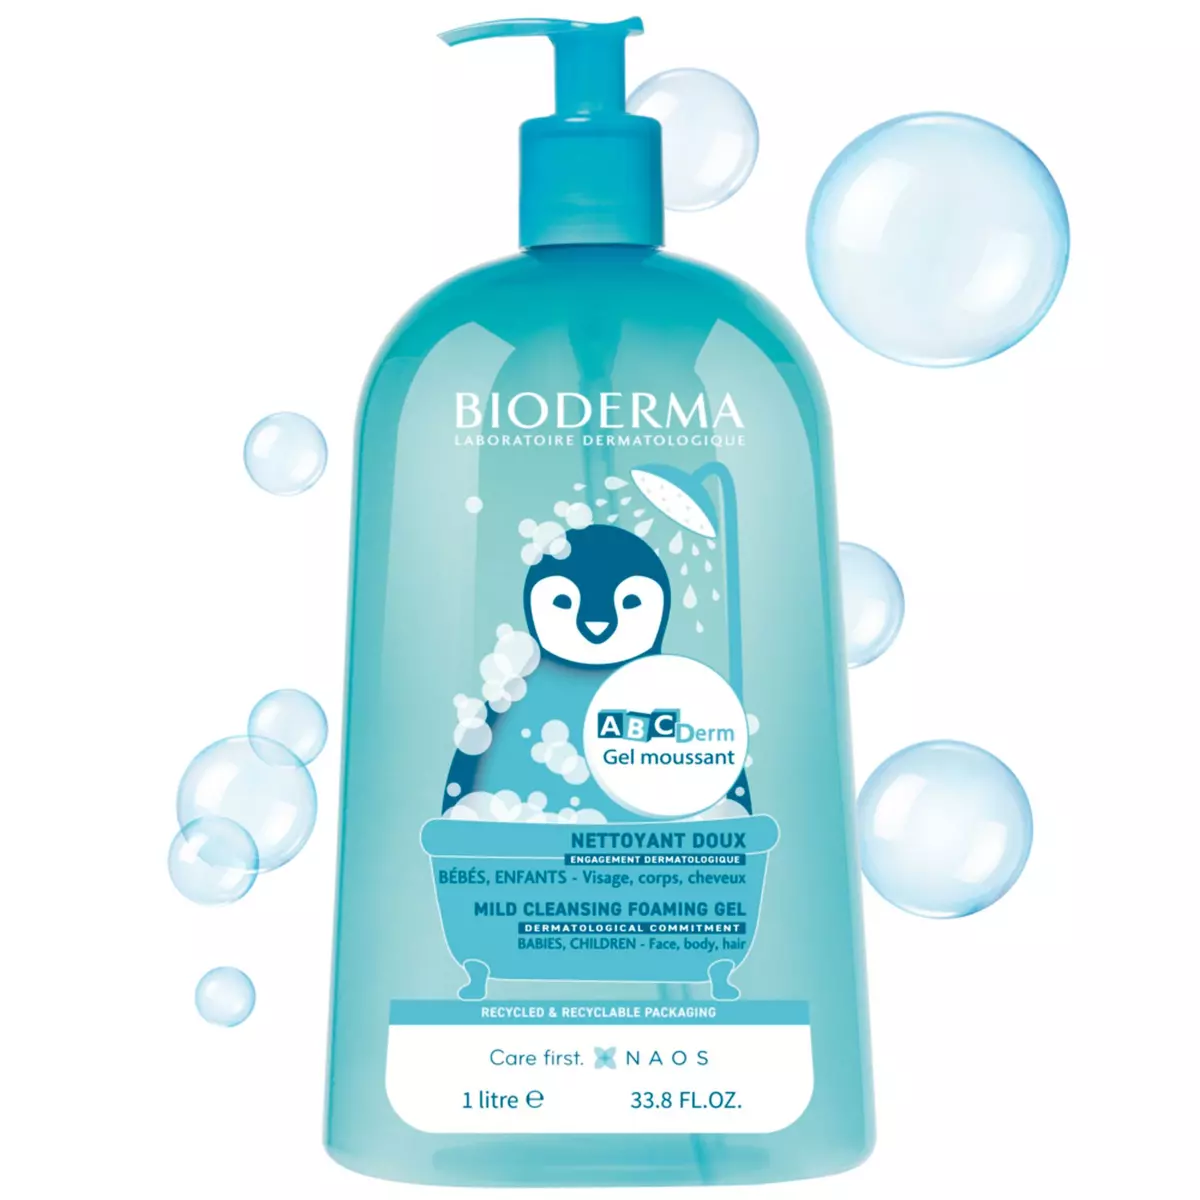 BIODERMA ABC Derm gel moussant et nettoyant doux visage corps et cheveux 1l